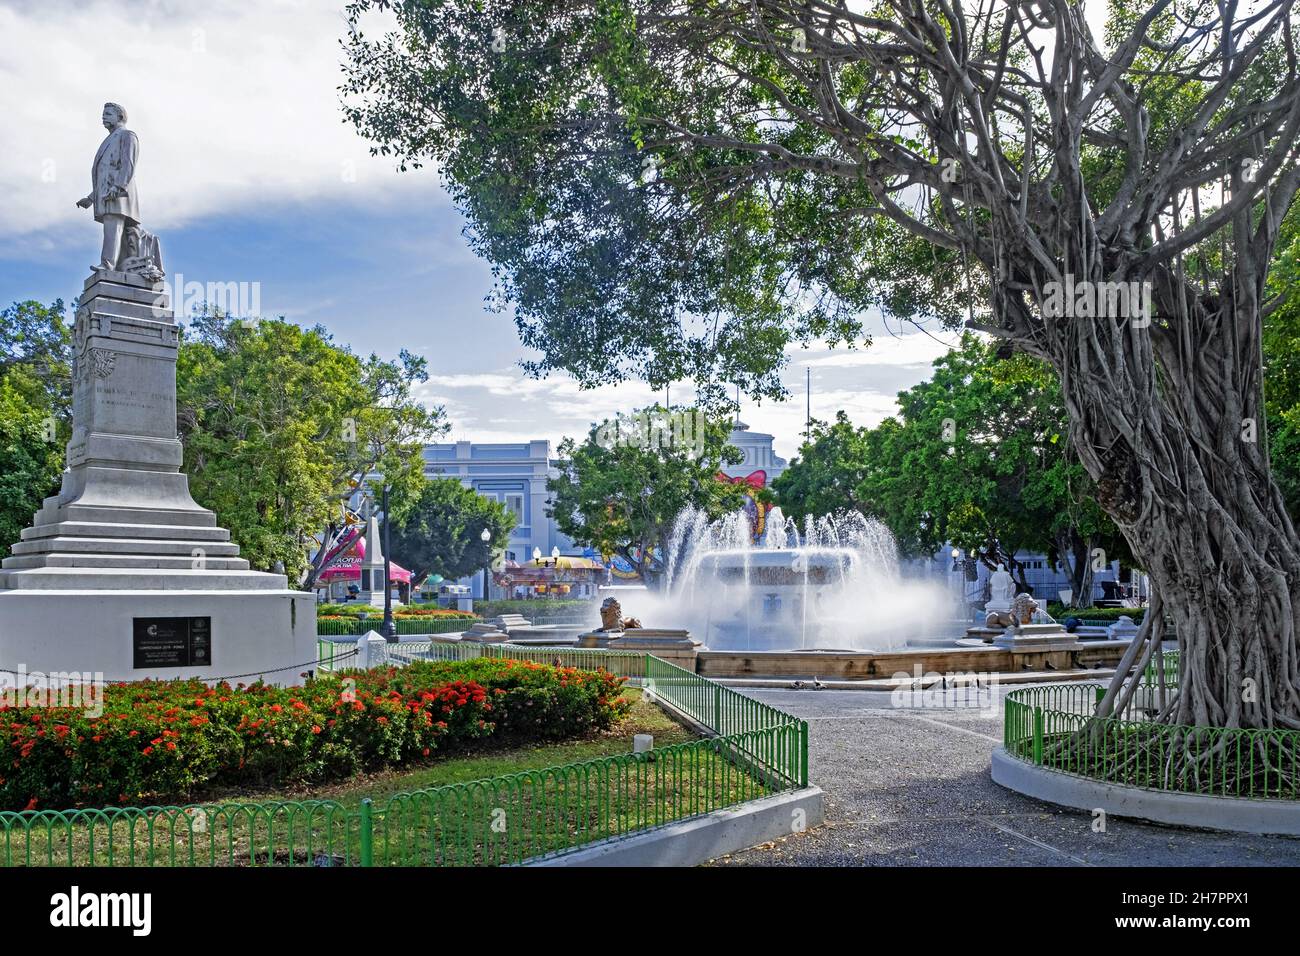 Löwenbrunnen auf der Plaza Degetau und Statue von Luis Muñoz Rivera auf der Plaza Las Delicias in der Stadt Ponce, Puerto Rico, Großantillen, Karibik Stockfoto